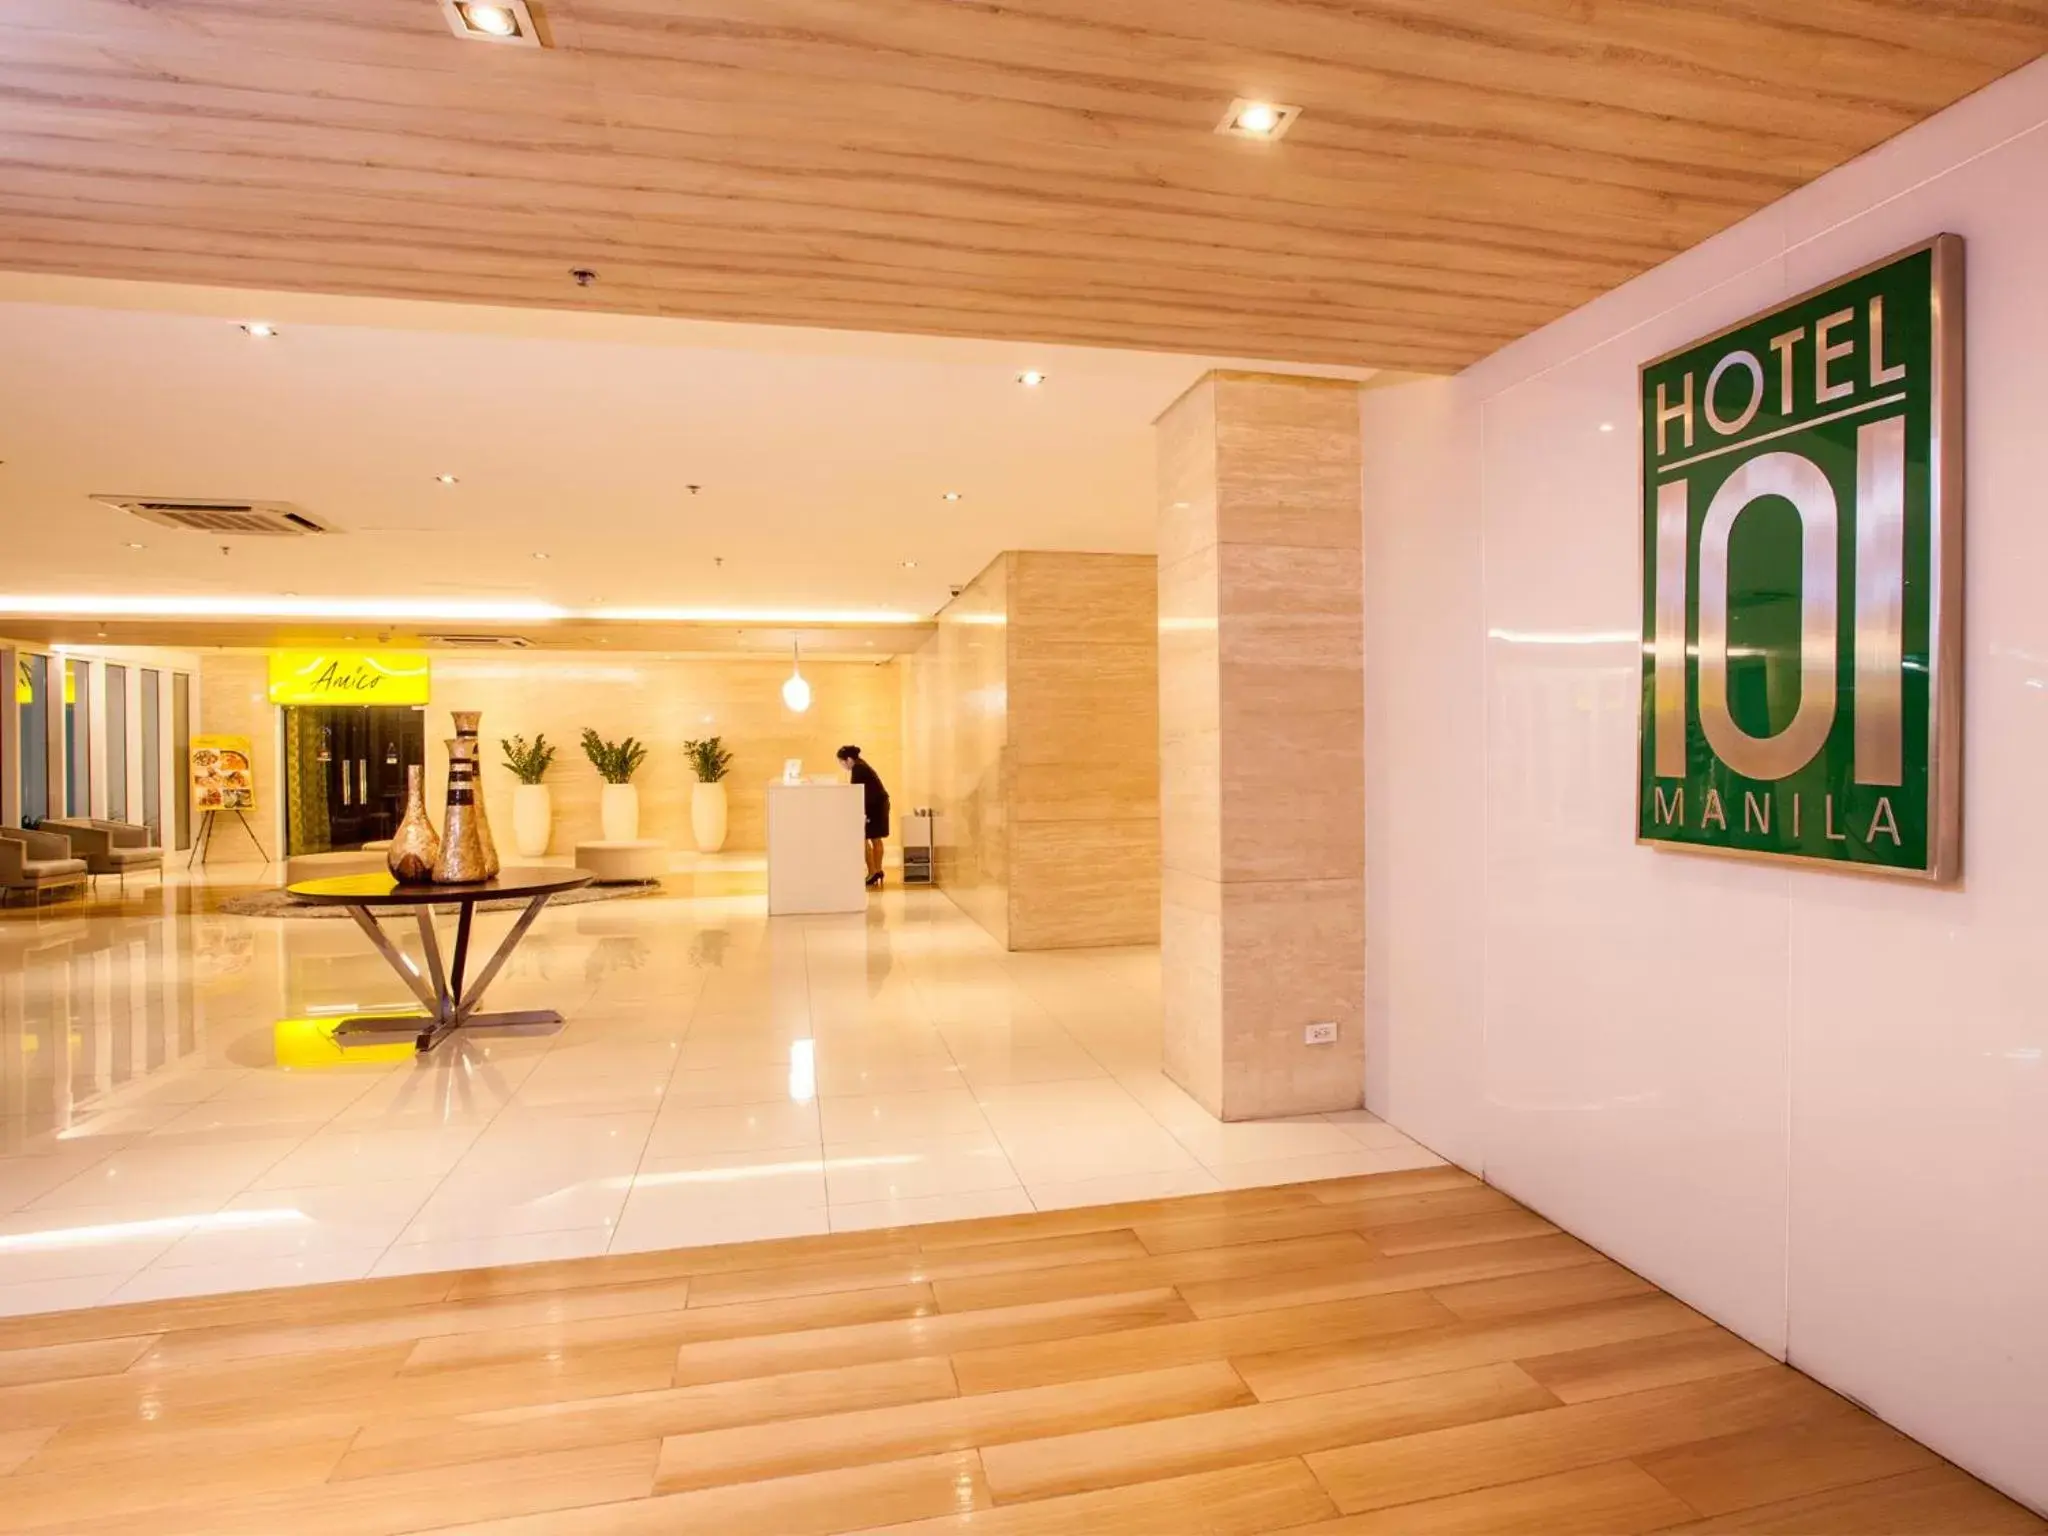 Lobby or reception, Lobby/Reception in Hotel 101 - Manila